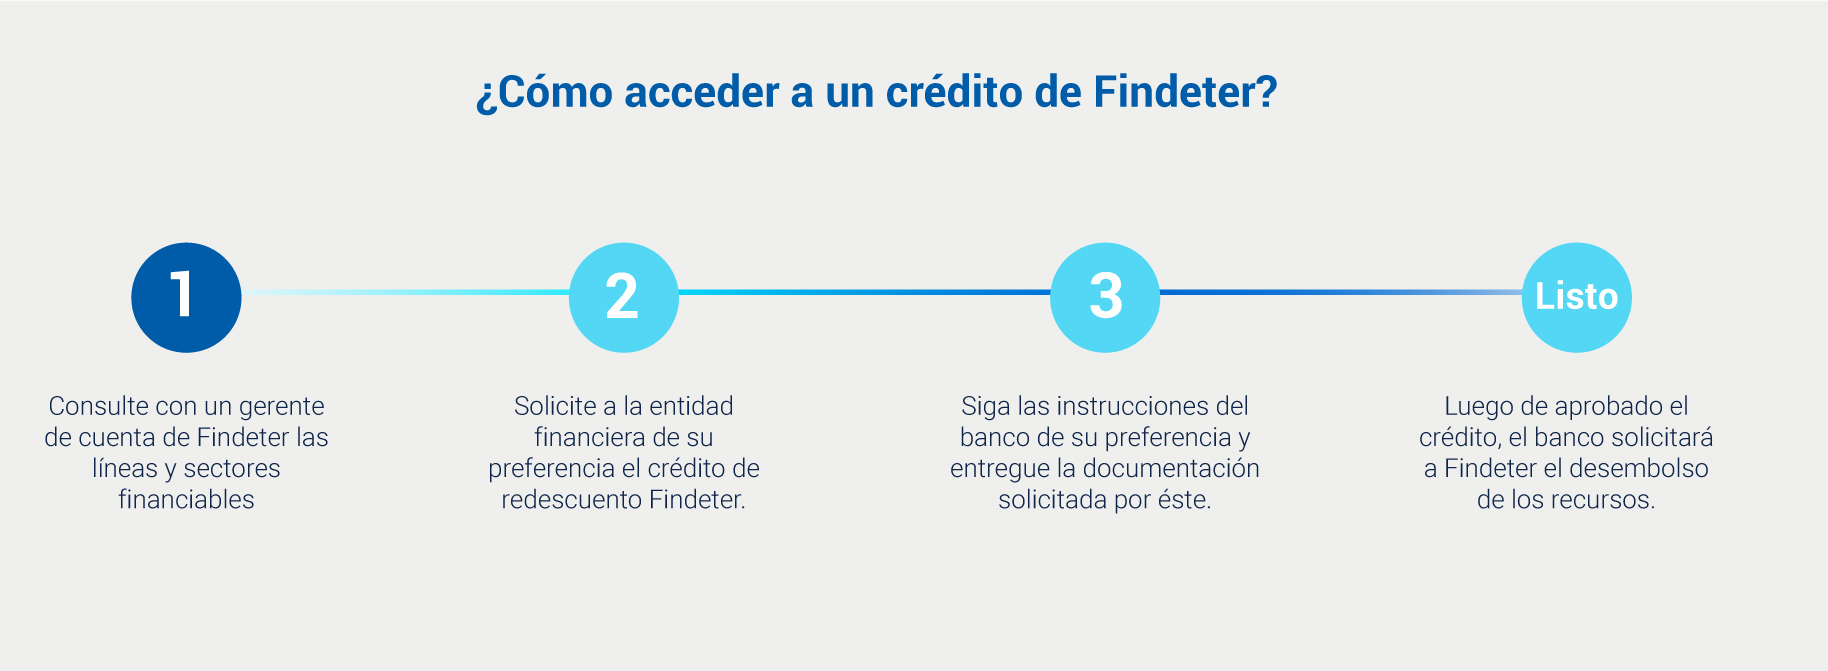 Diagrama que muestra un paso a paso para acceder a crédito de redescuento de Findeter